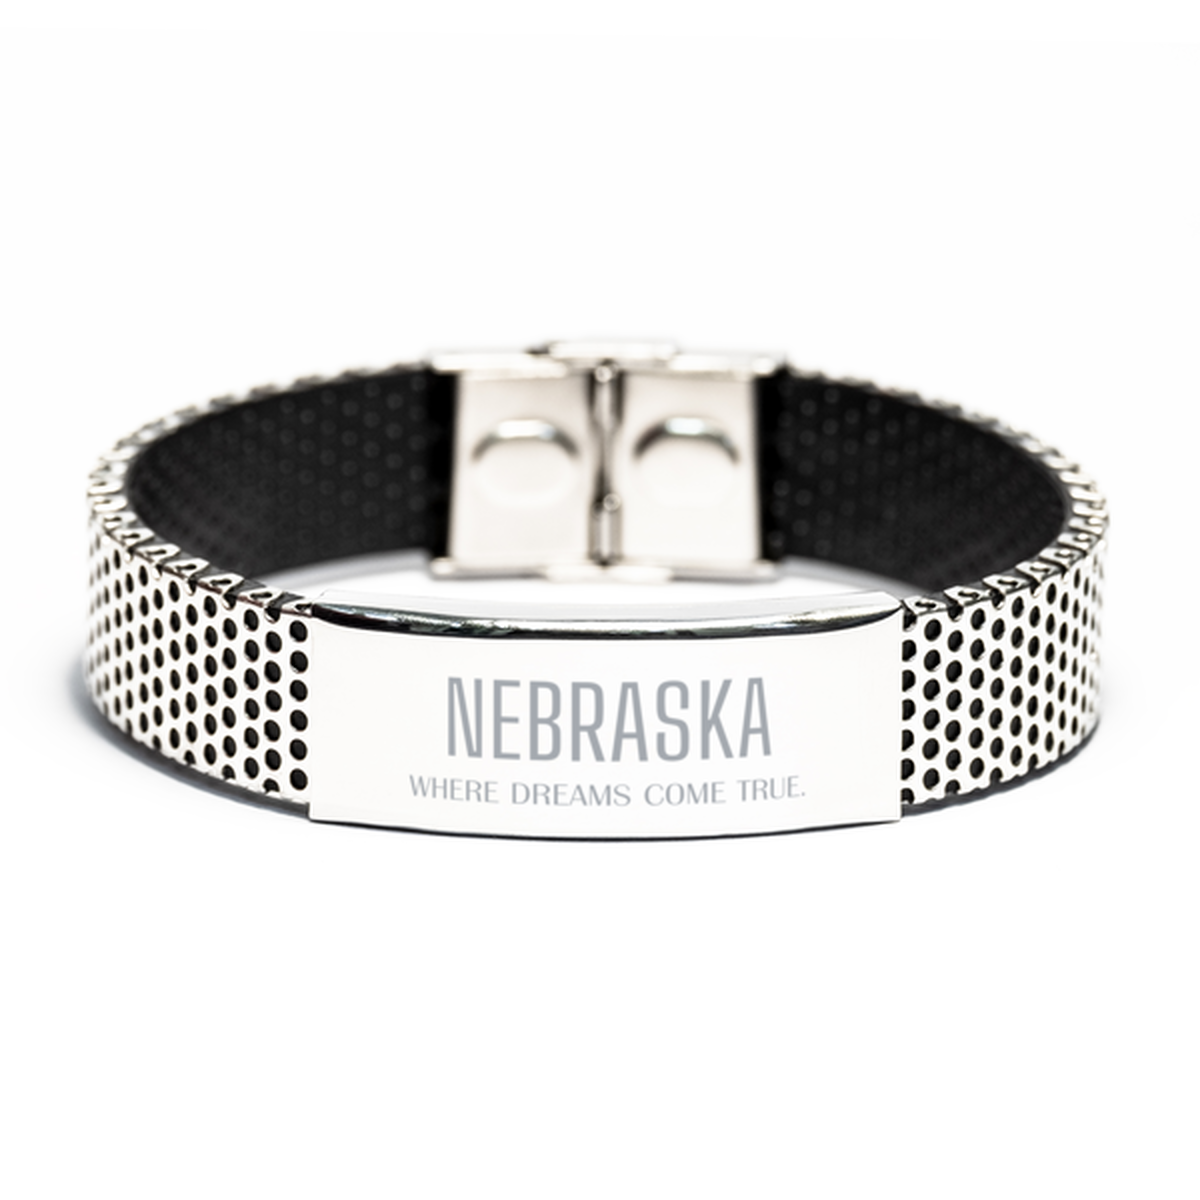 Love Nebraska State Stainless Steel Bracelet, Nebraska Where dreams come true, Birthday Inspirational Gifts For Nebraska Men, Women, Friends